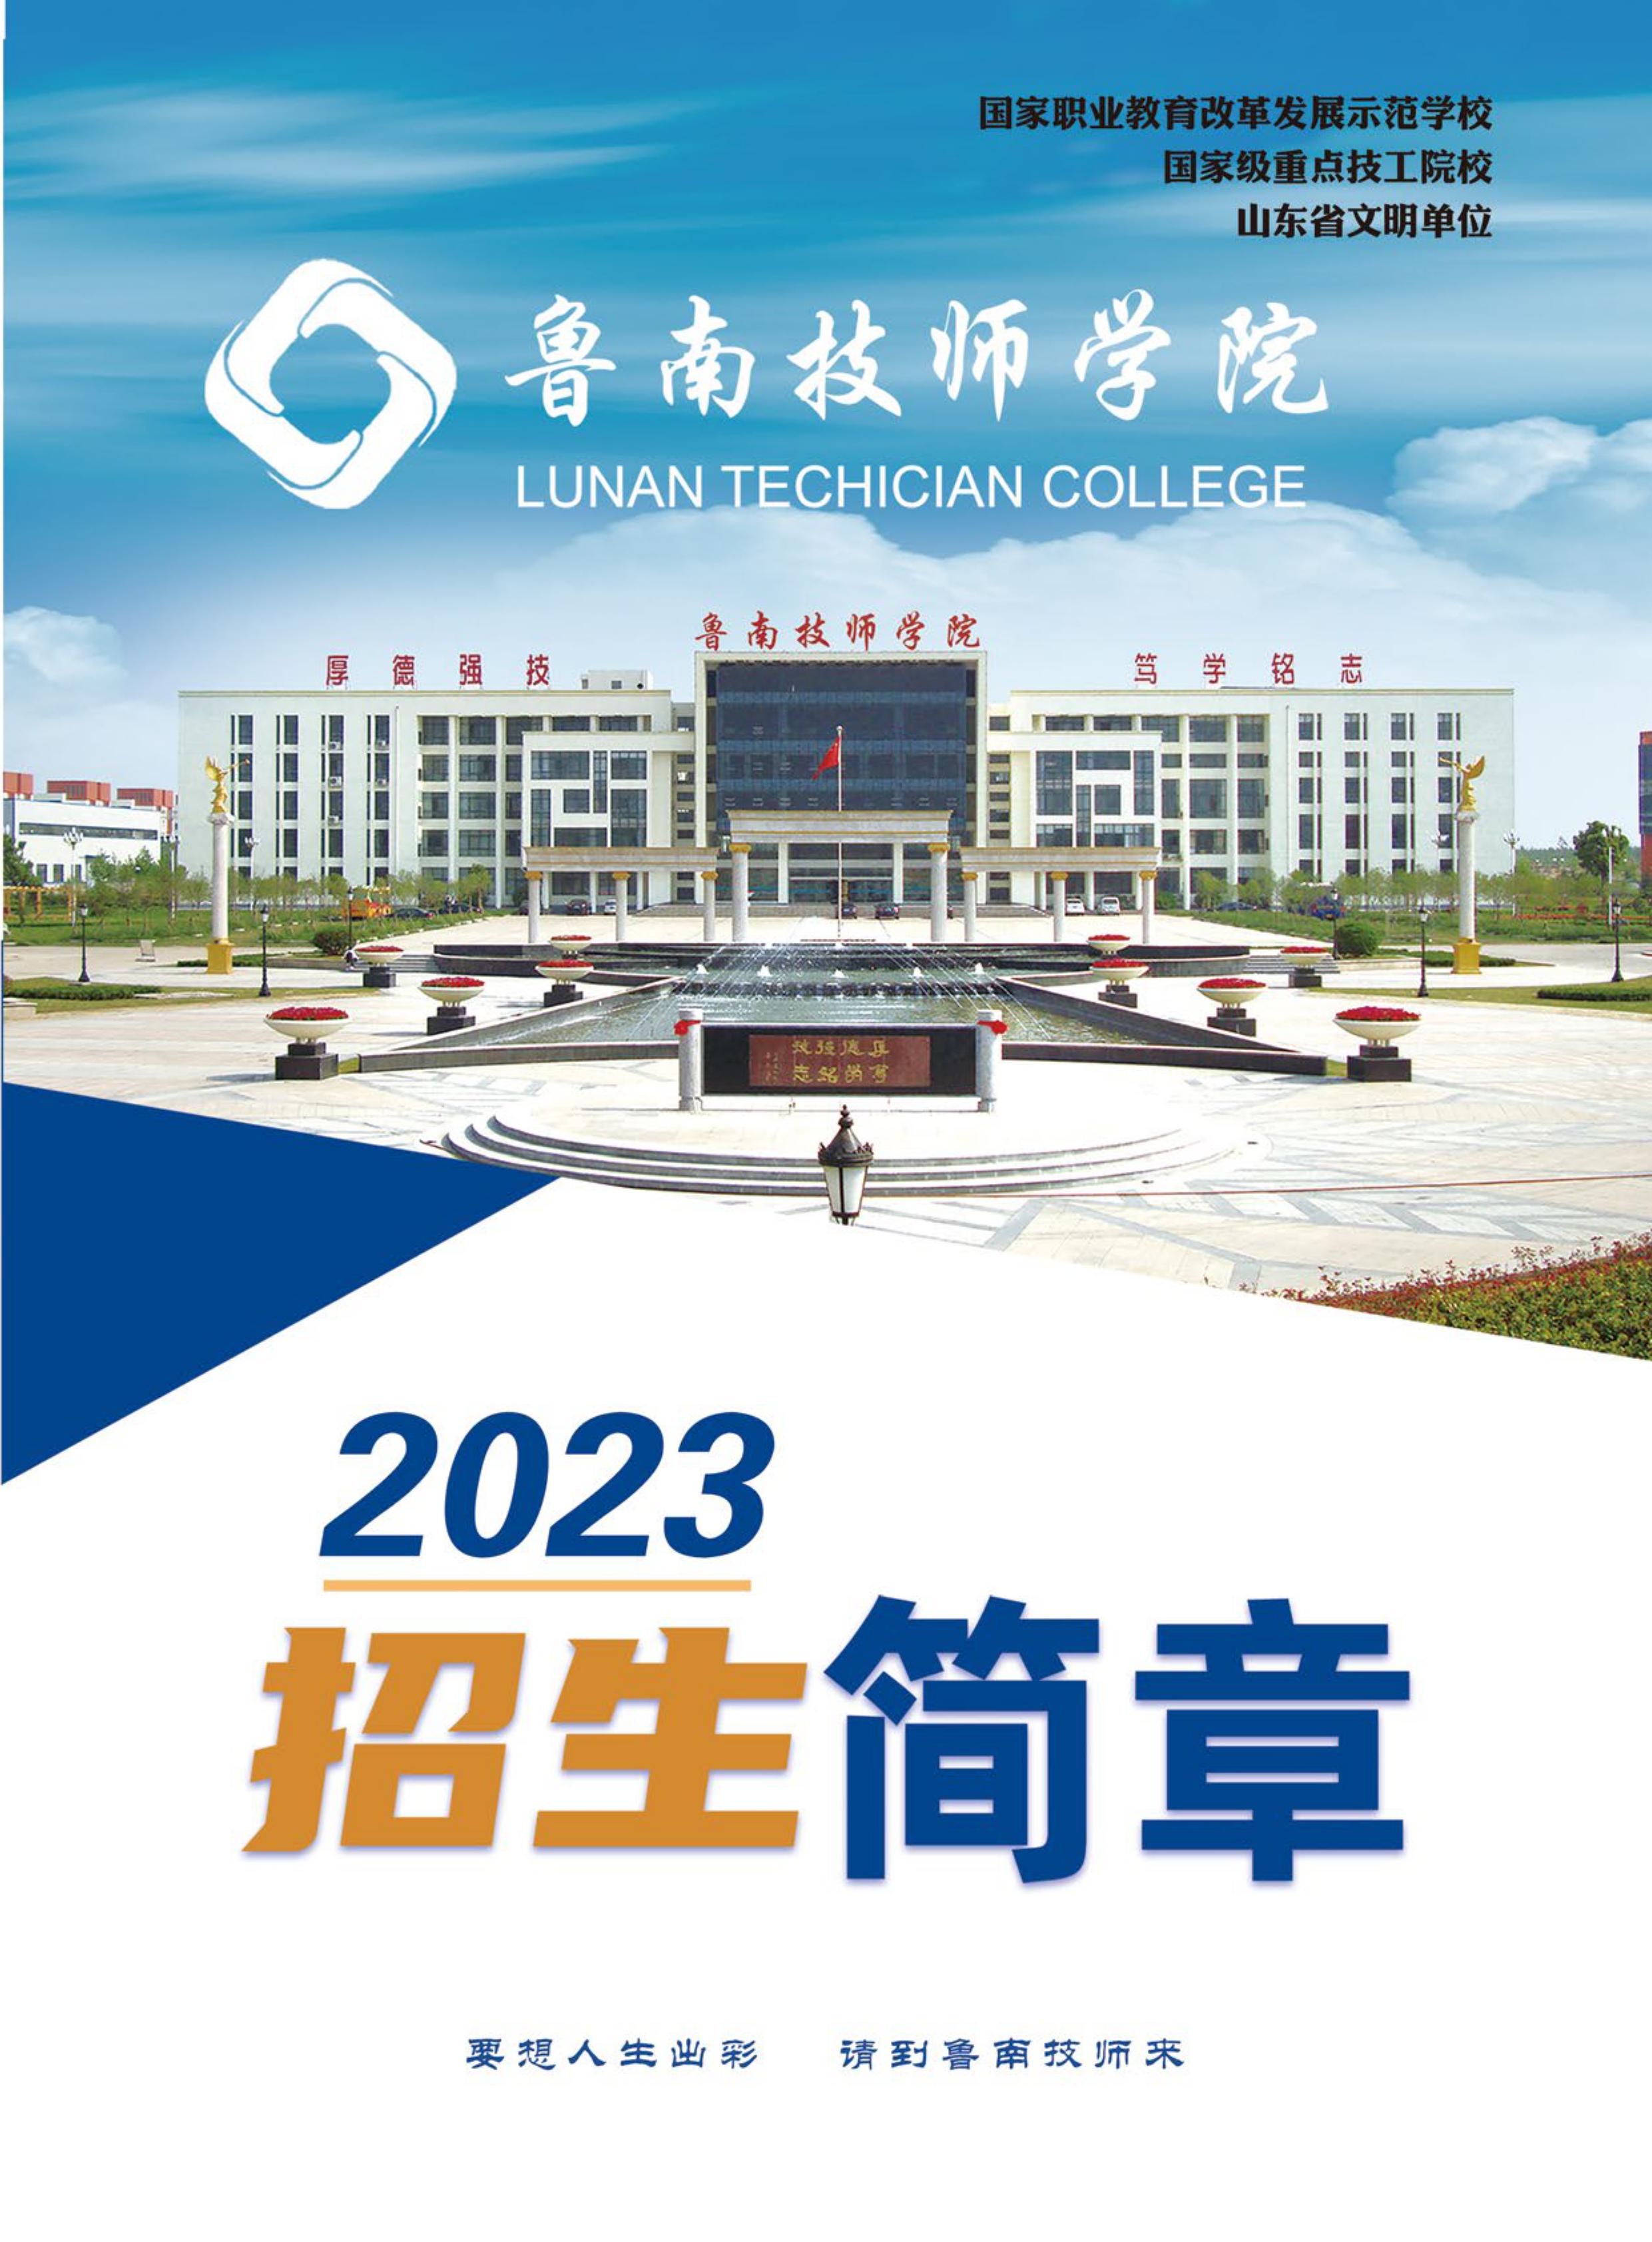 鲁南技师学院2023年简章(1)-1.jpg